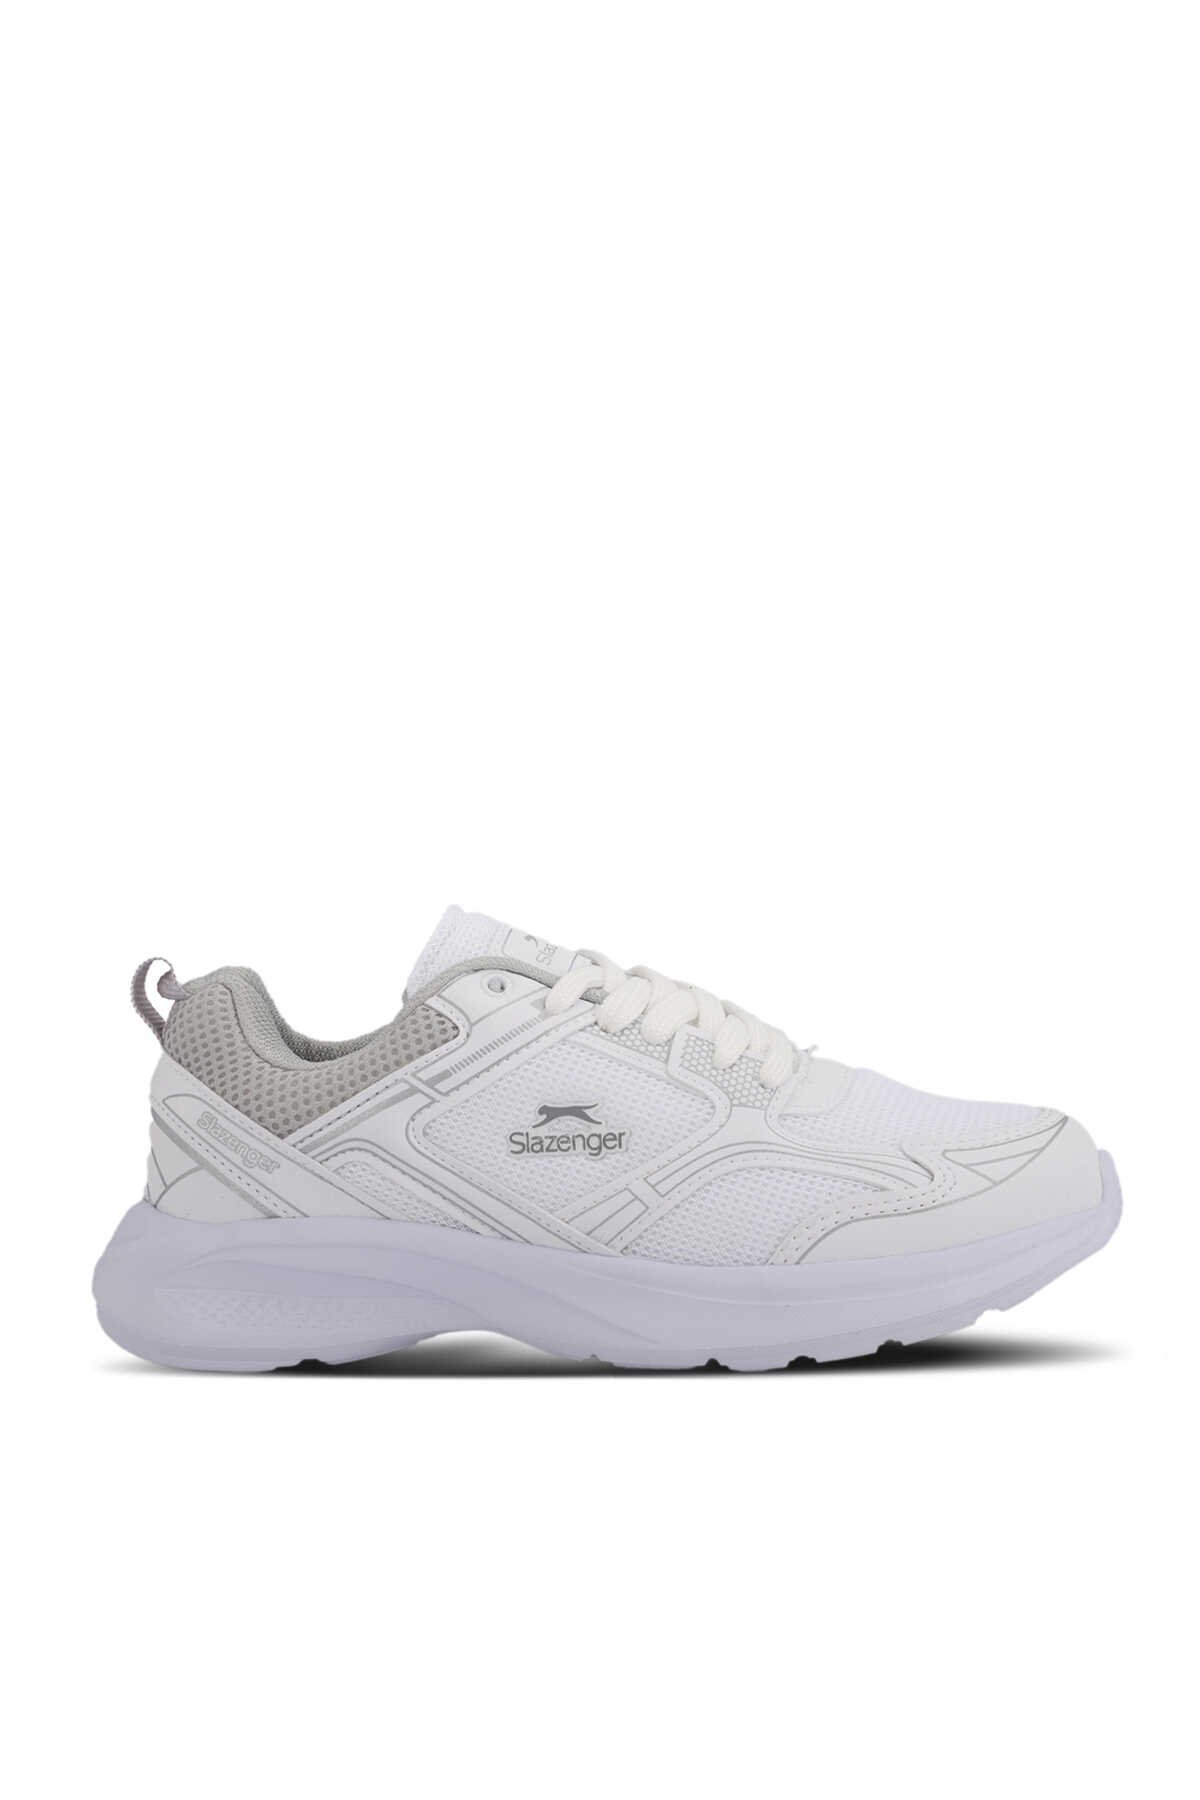 Slazenger - Slazenger GIMA Erkek Sneaker Ayakkabı Beyaz / Gümüş